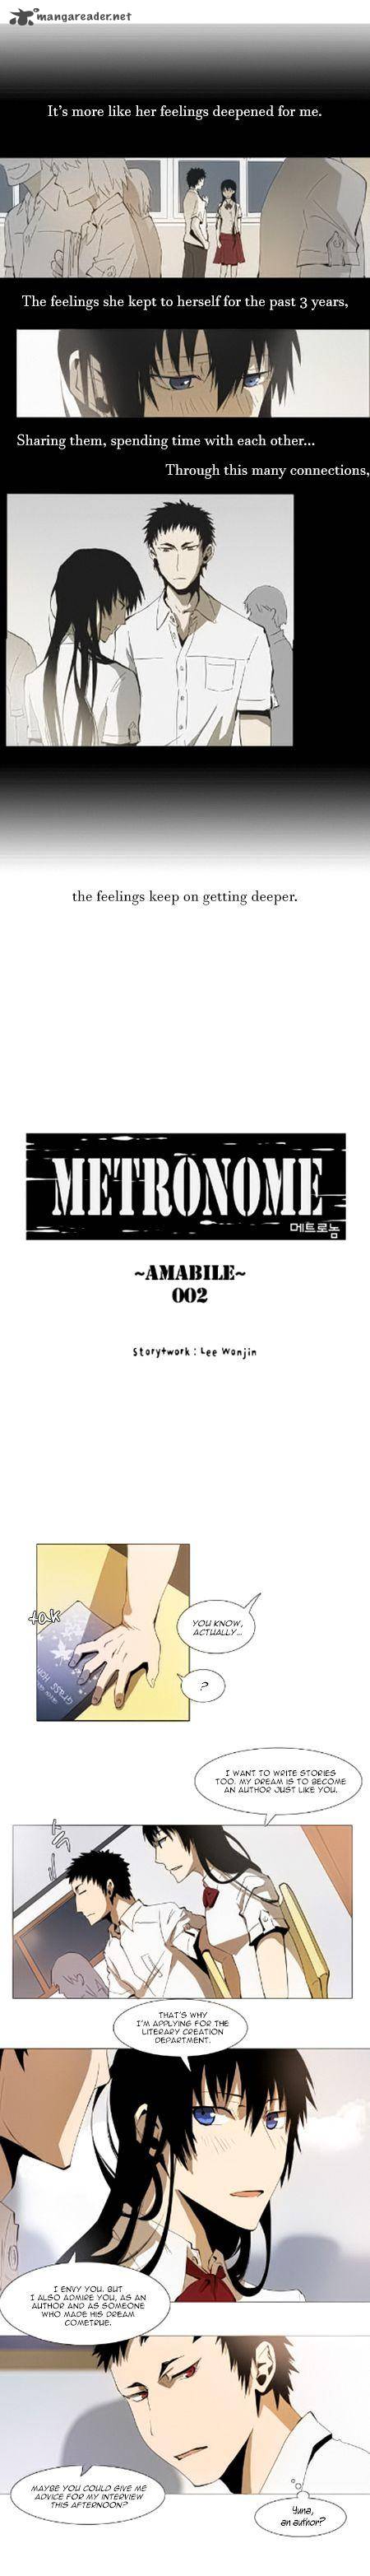 metronome_33_4